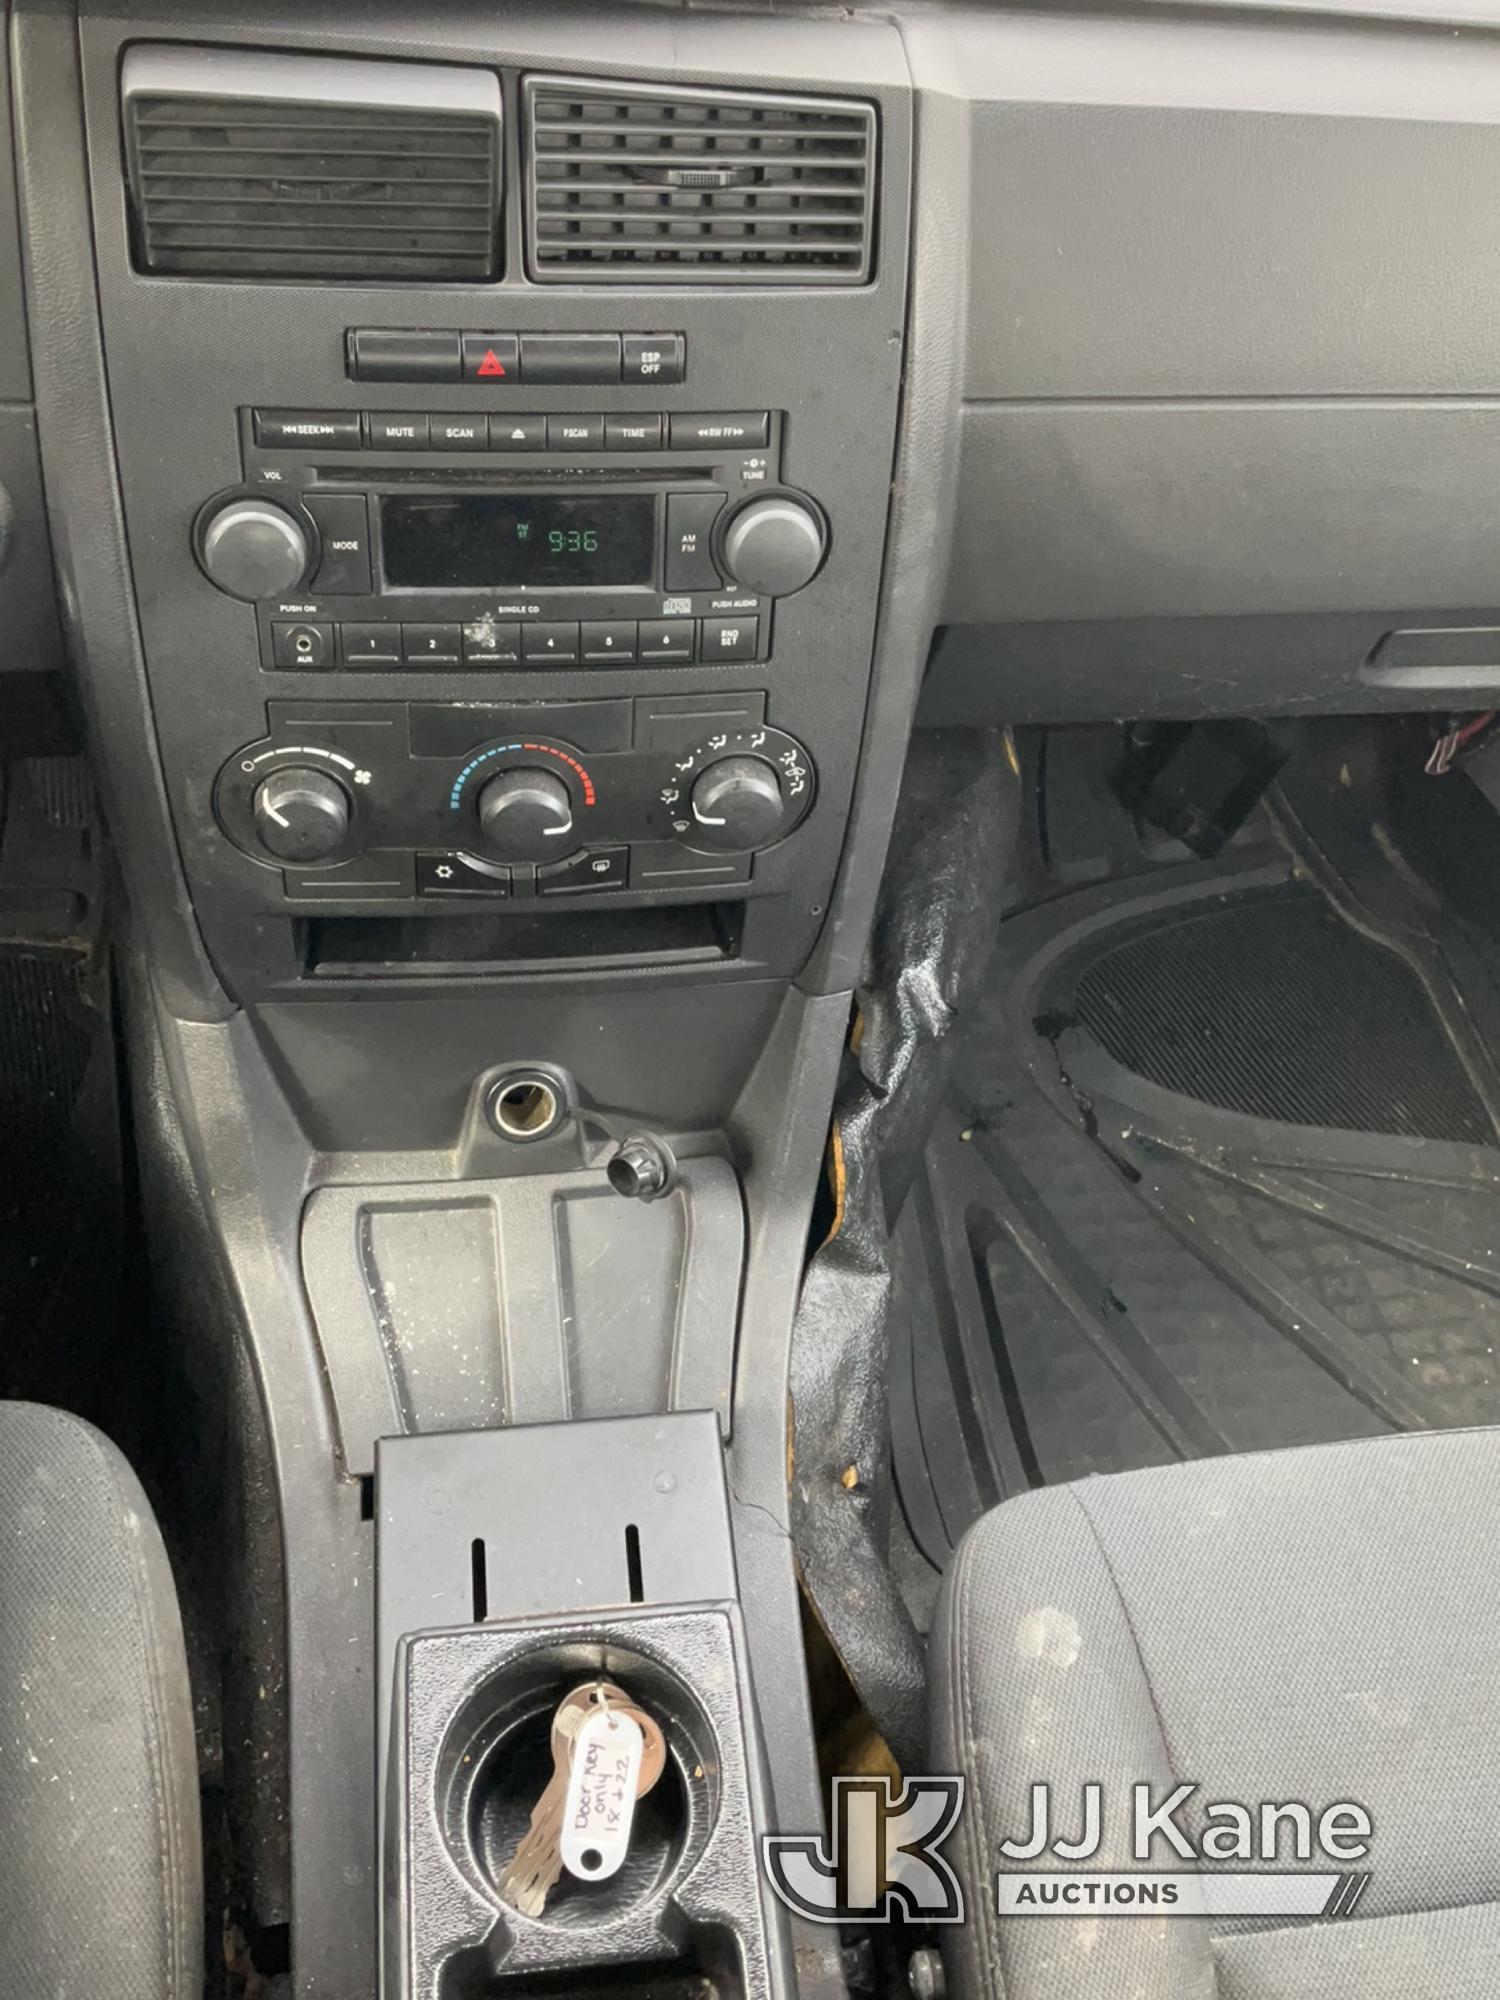 (South Beloit, IL) 2006 Dodge Charger 4-Door Sedan Runs & Moves) (Unable to Open Rear Passenger Door